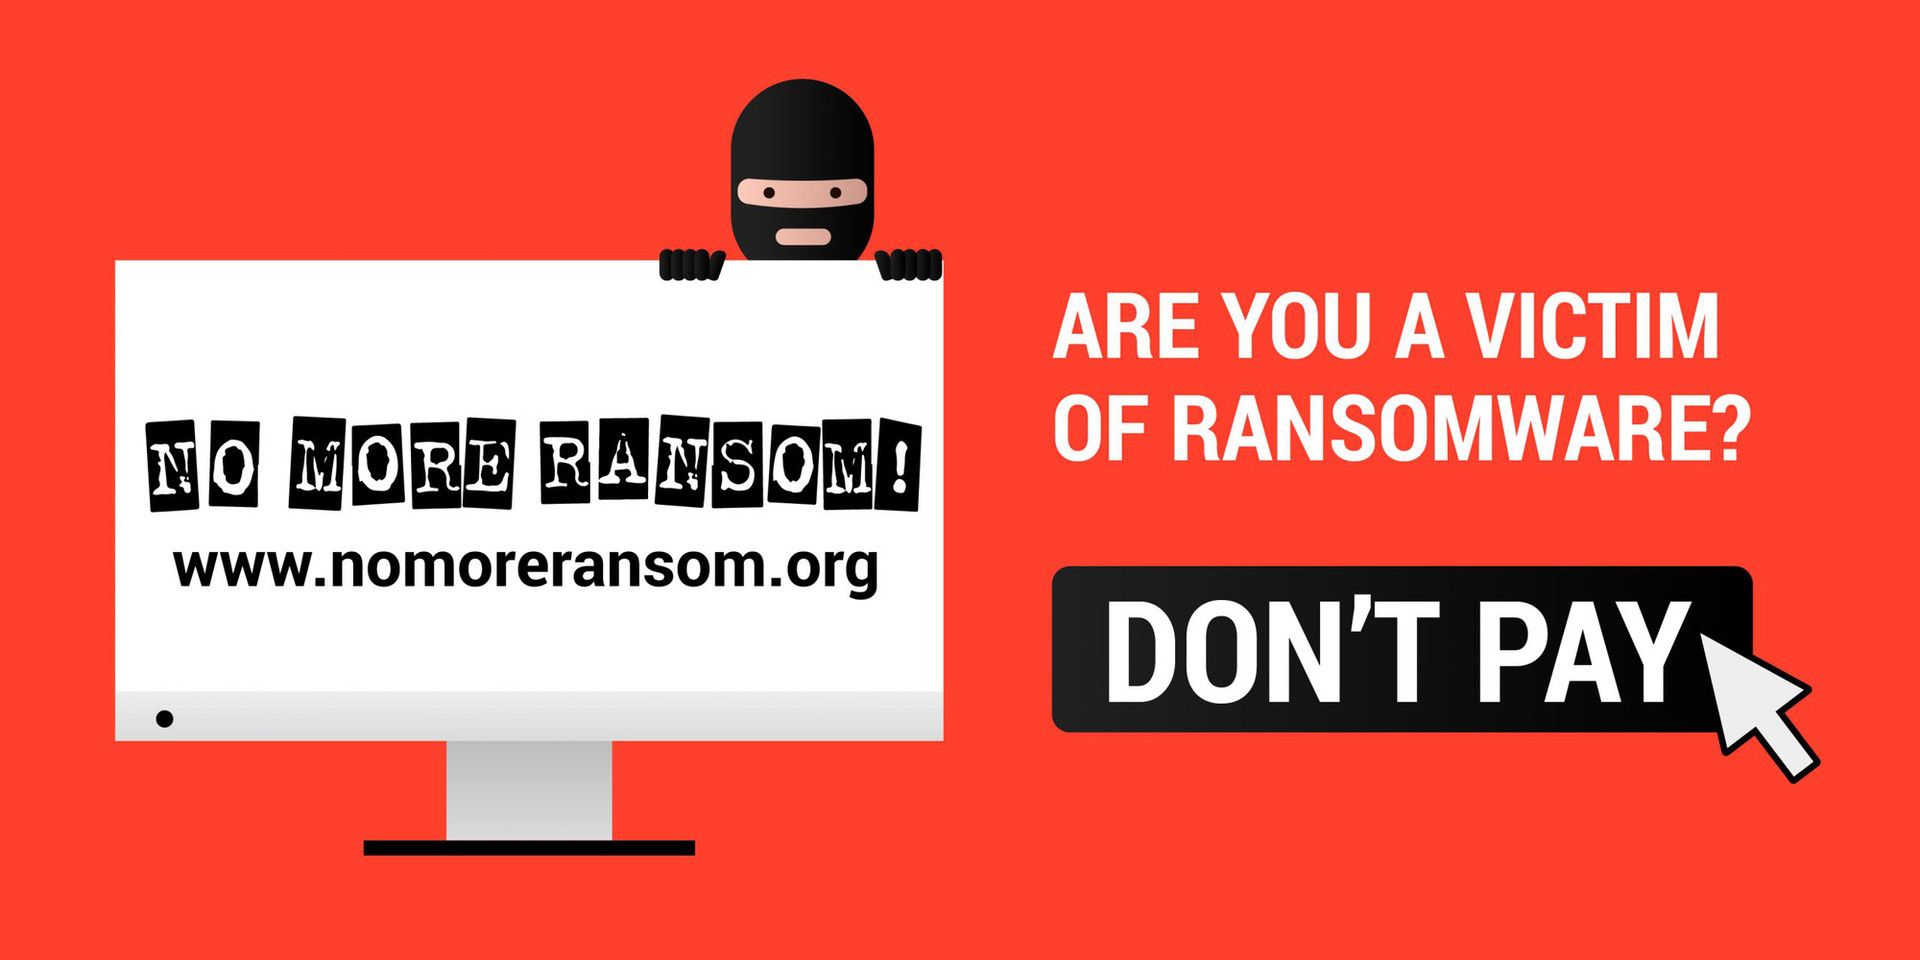 5 năm cho một dự án chống 150 nhóm ransomware  - Ảnh 1.